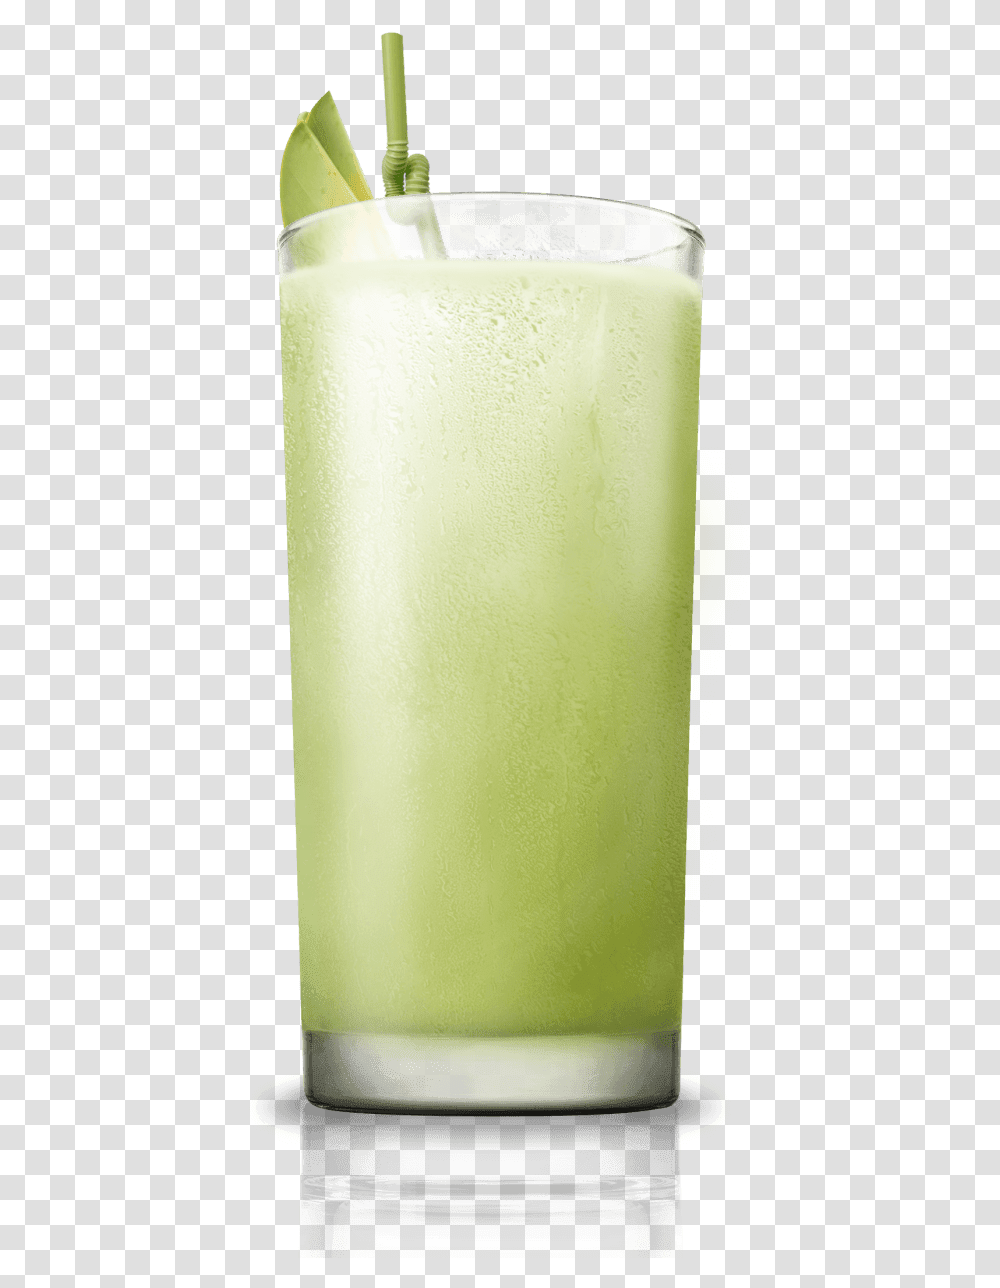 Lemon Juice Glass, Milk, Beverage, Drink, Lemonade Transparent Png